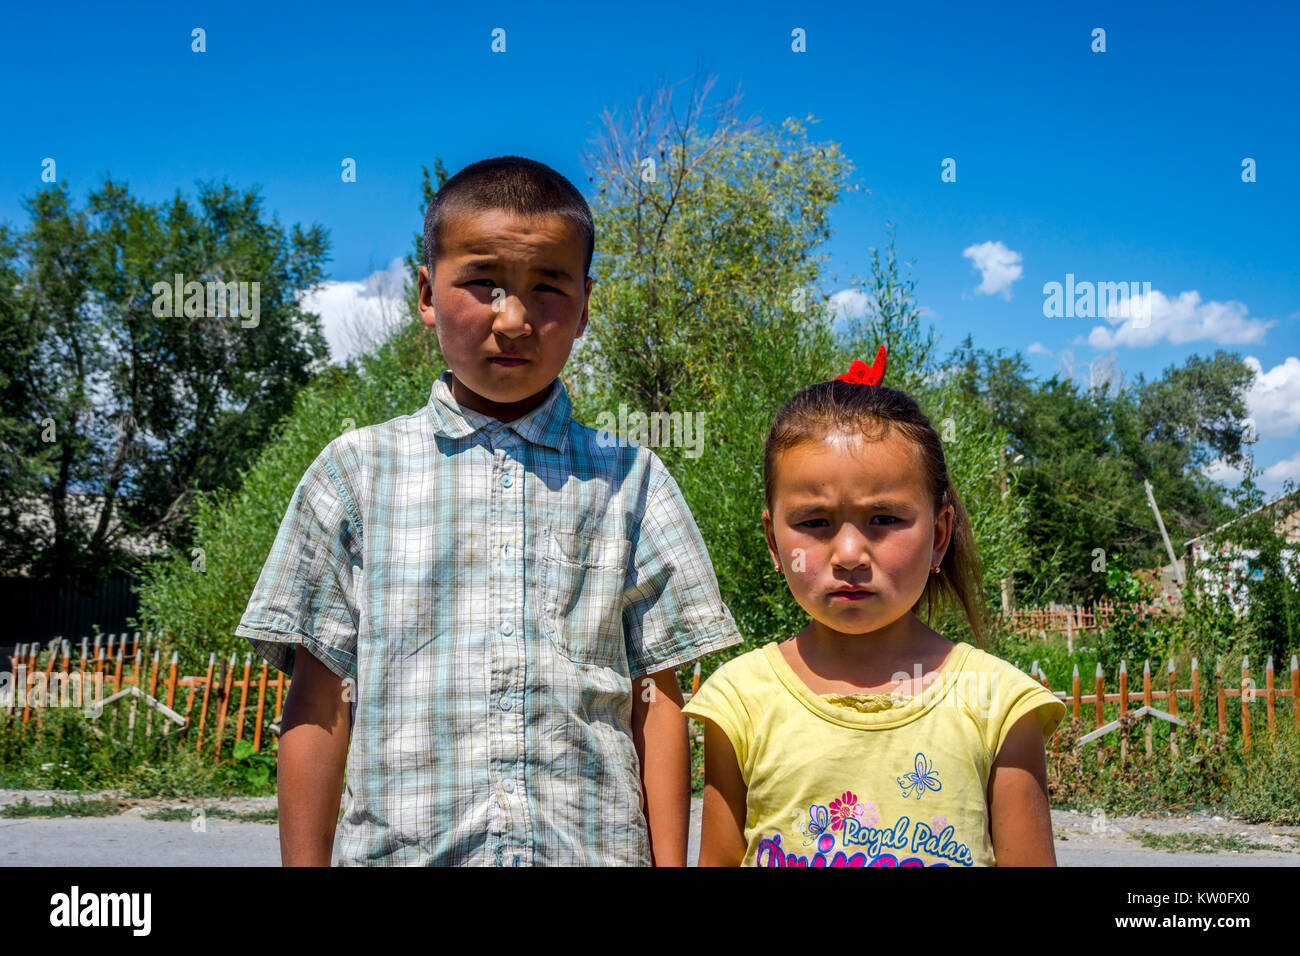 UGUT, Kirguistán - Agosto 16: hermanos, un hermano y una hermana posando con grave expresión facial. Ugut es una remota aldea en Kirguistán. Agosto 201 Foto de stock